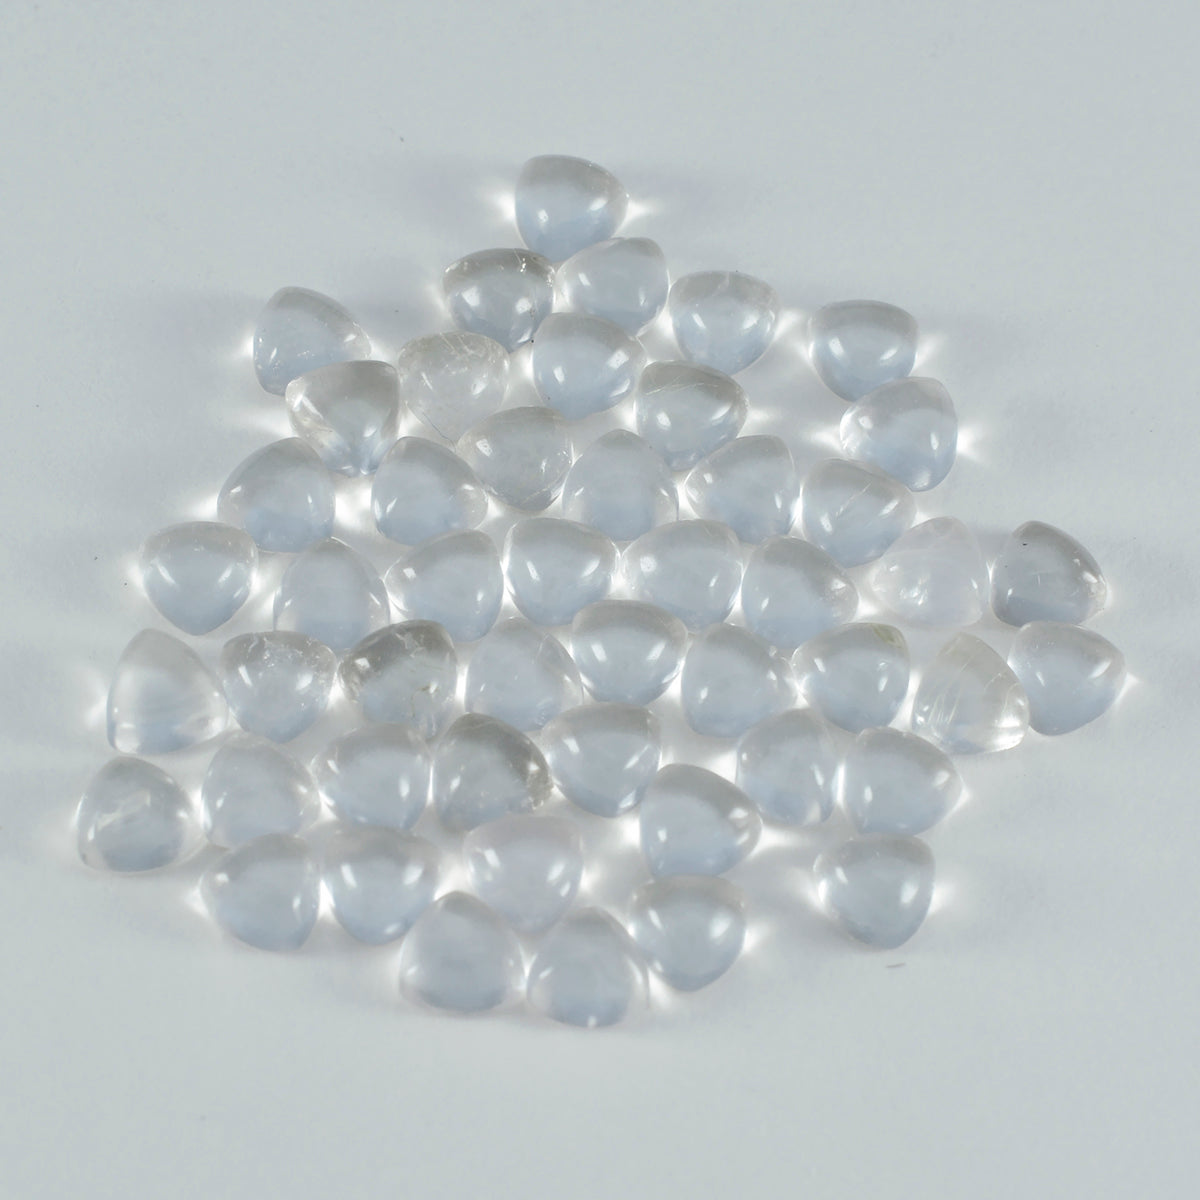 riyogems 1 шт. белый кристалл кварца кабошон 6x6 мм форма триллиона драгоценный камень фантастического качества